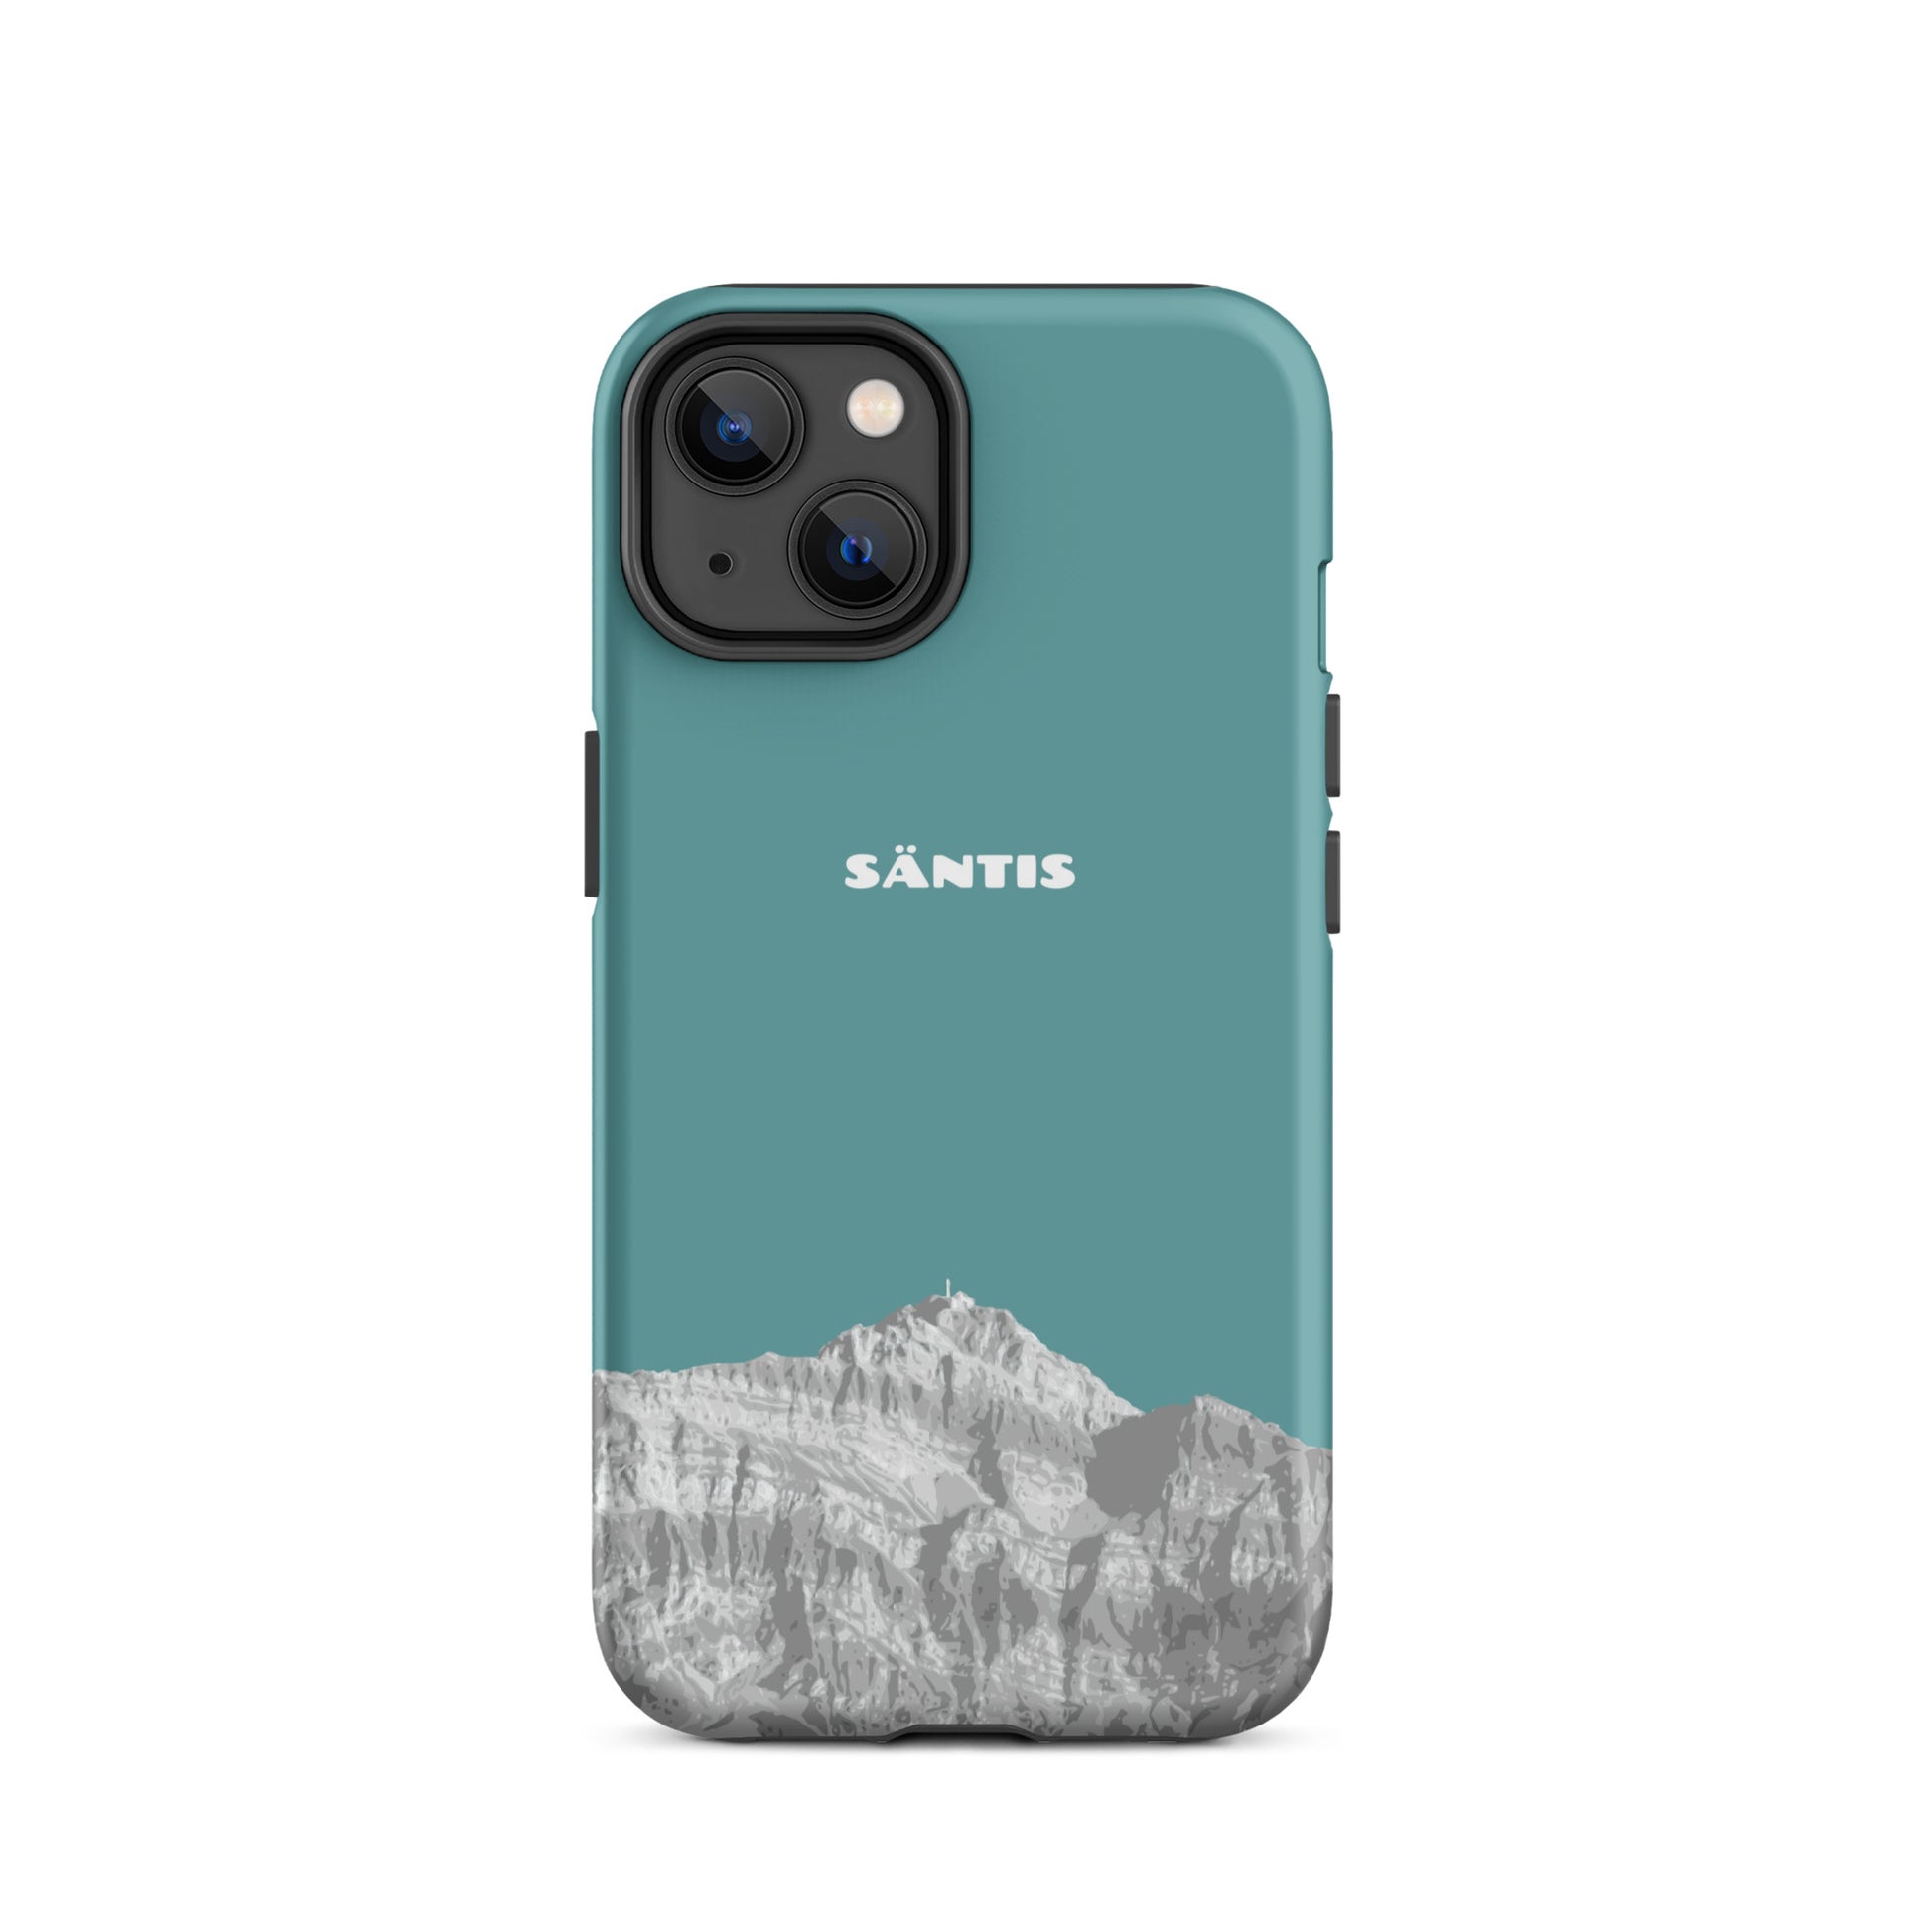 Hülle für das iPhone 14 von Apple in der Farbe Kadettenblau, dass den Säntis im Alpstein zeigt.